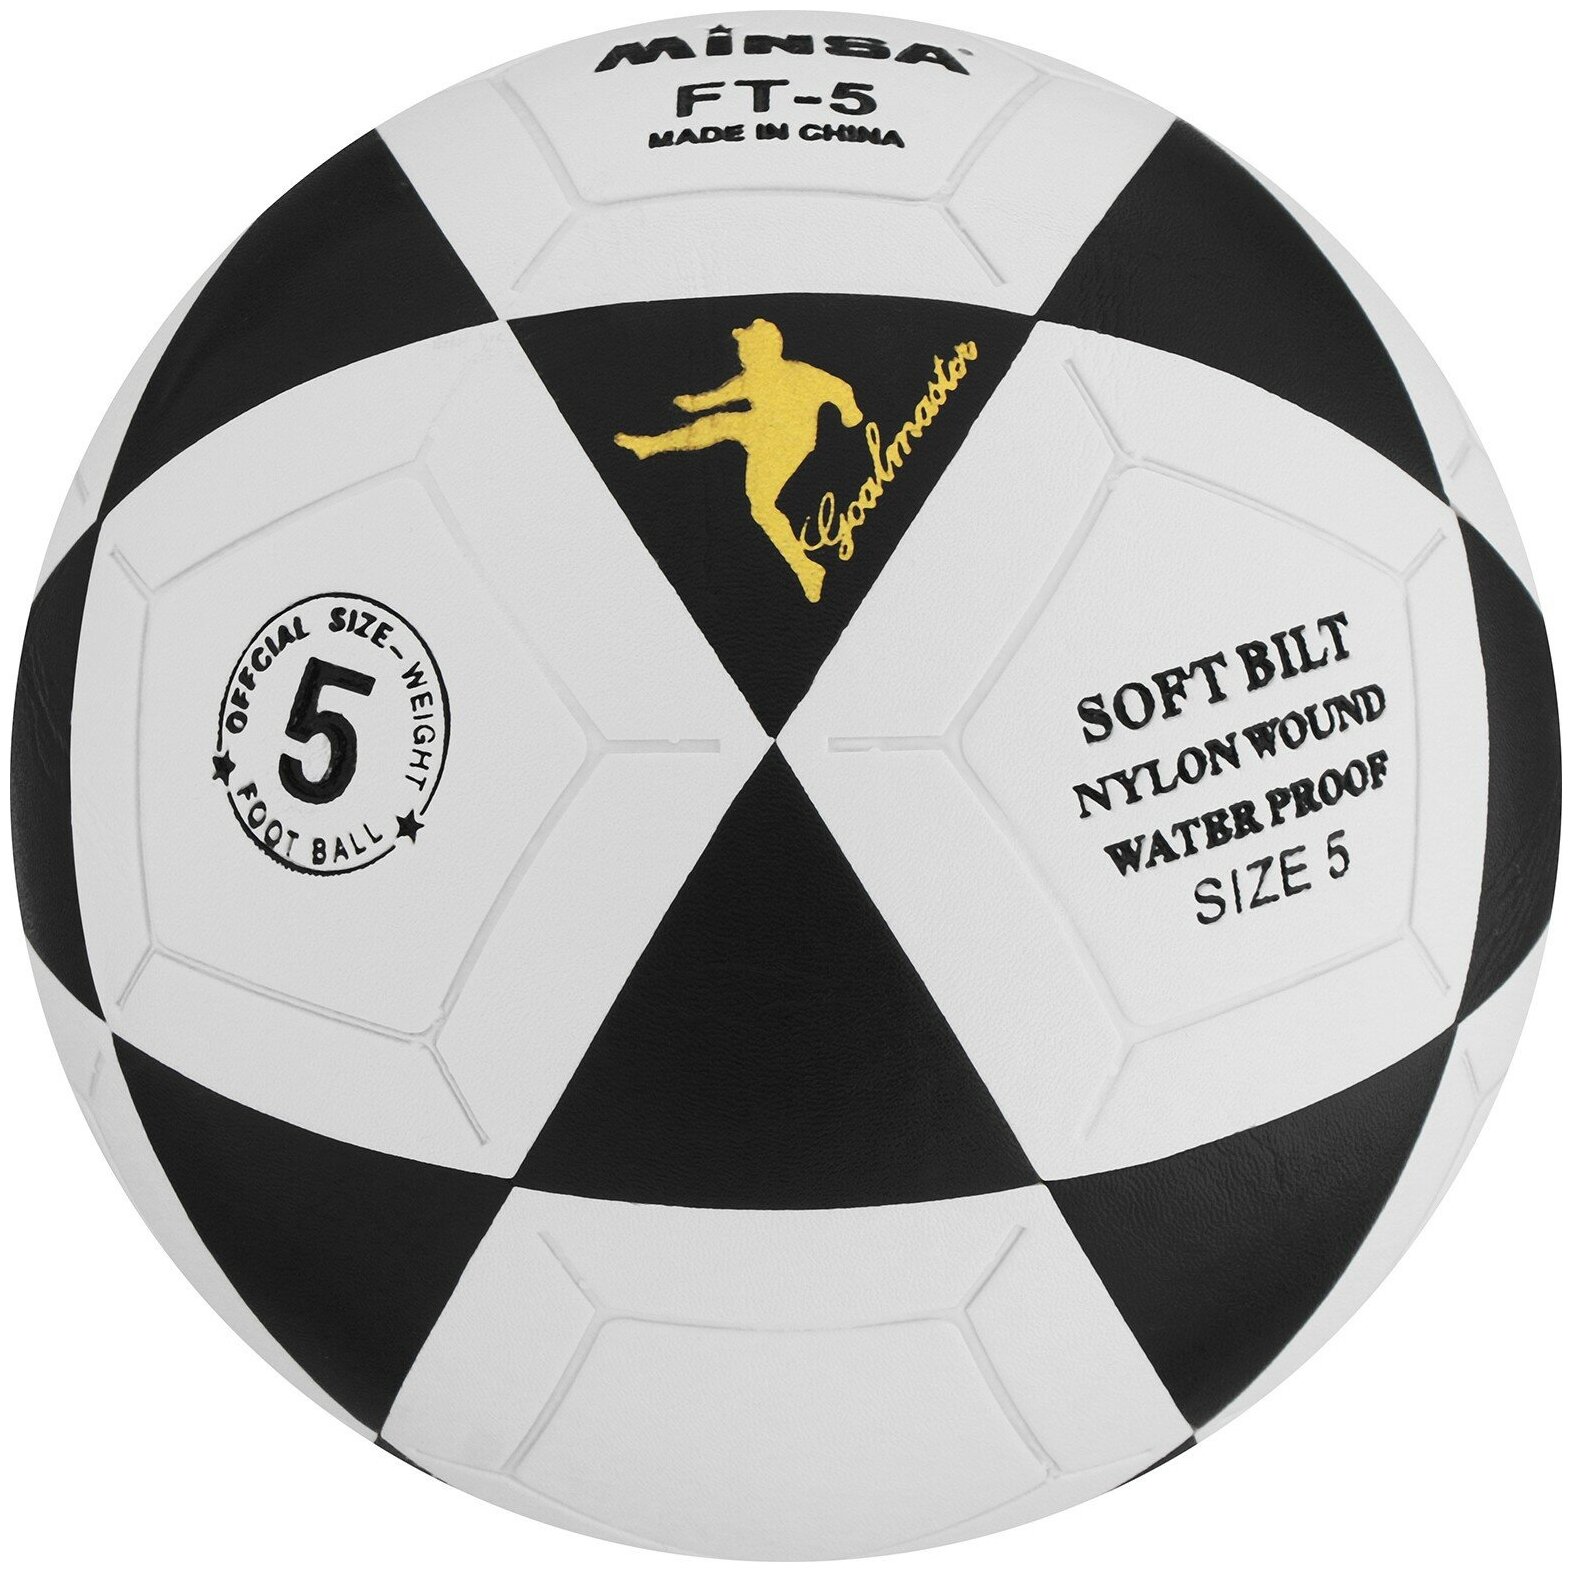 Мяч Minsa, футбольный, PU, машинная сшивка, 32 панели, размер 5, цвет белый, черный